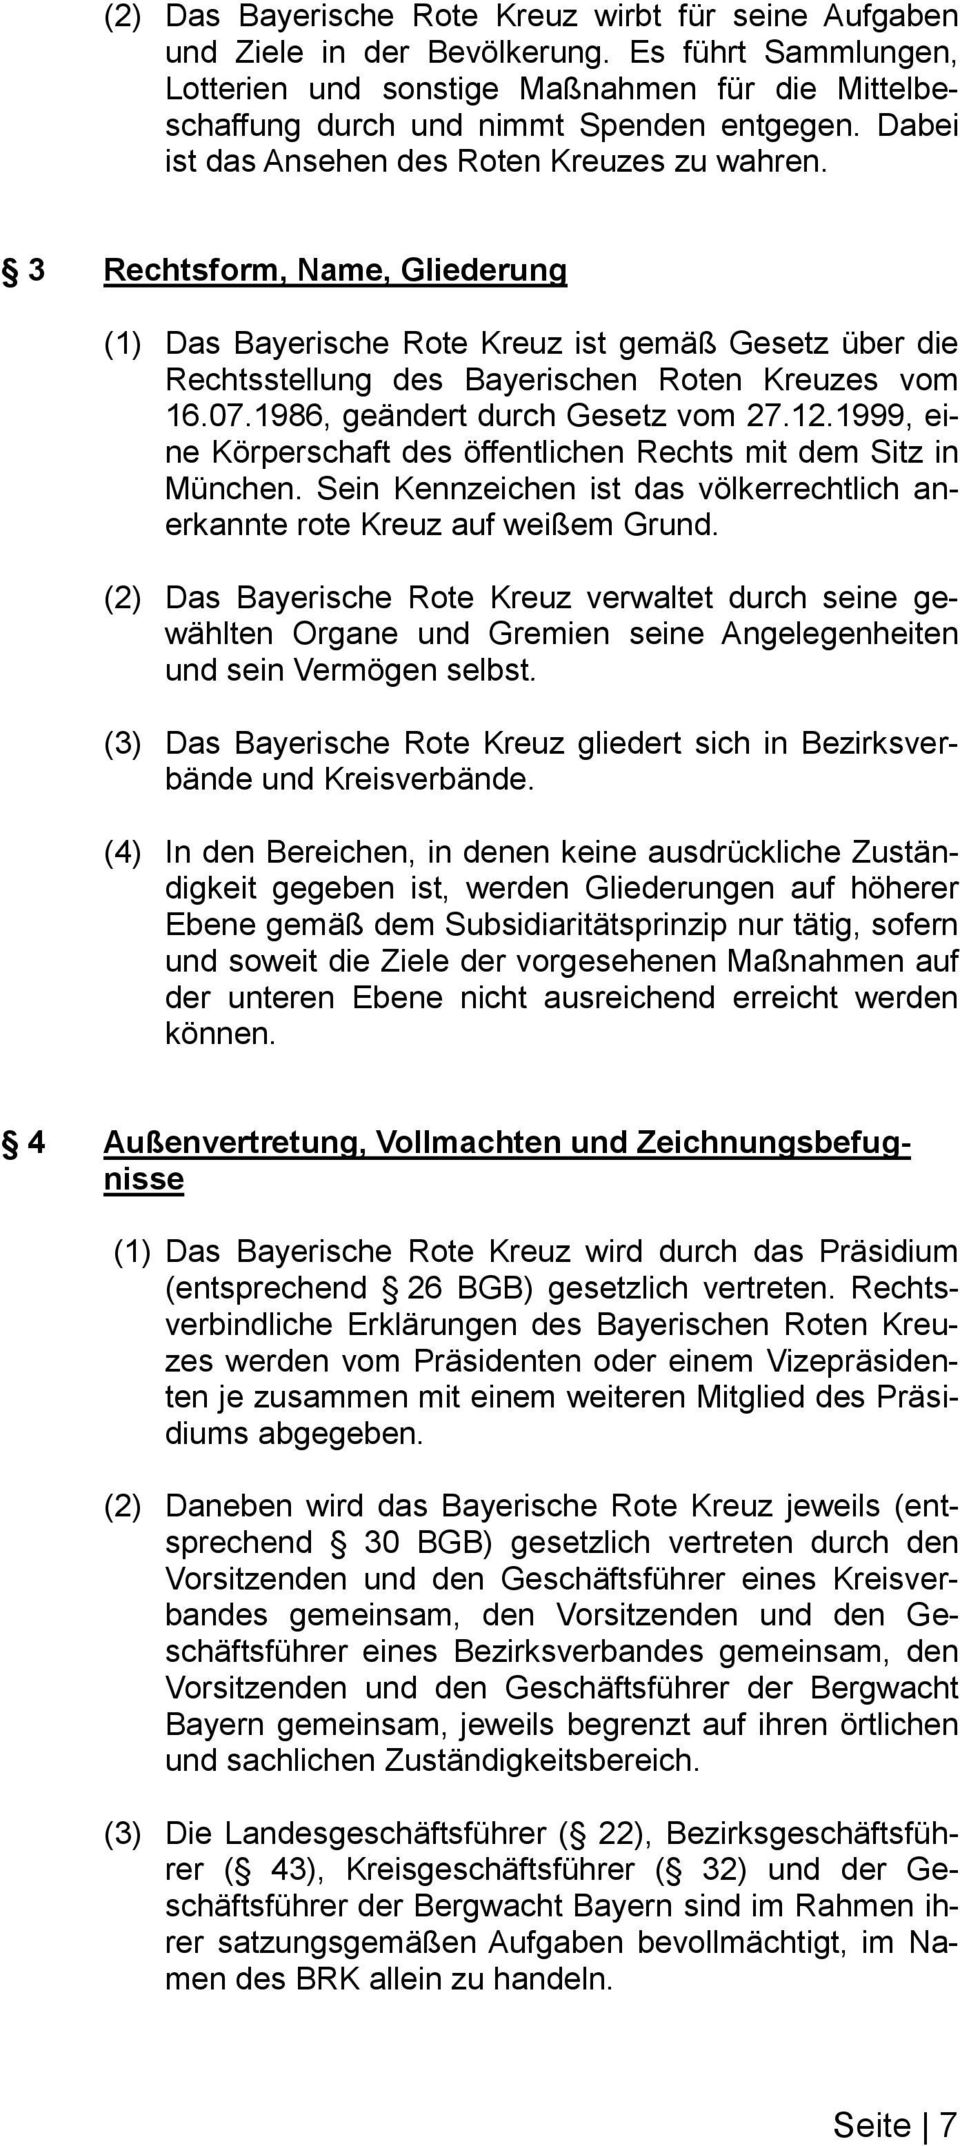 1986, geändert durch Gesetz vom 27.12.1999, eine Körperschaft des öffentlichen Rechts mit dem Sitz in München. Sein Kennzeichen ist das völkerrechtlich anerkannte rote Kreuz auf weißem Grund.